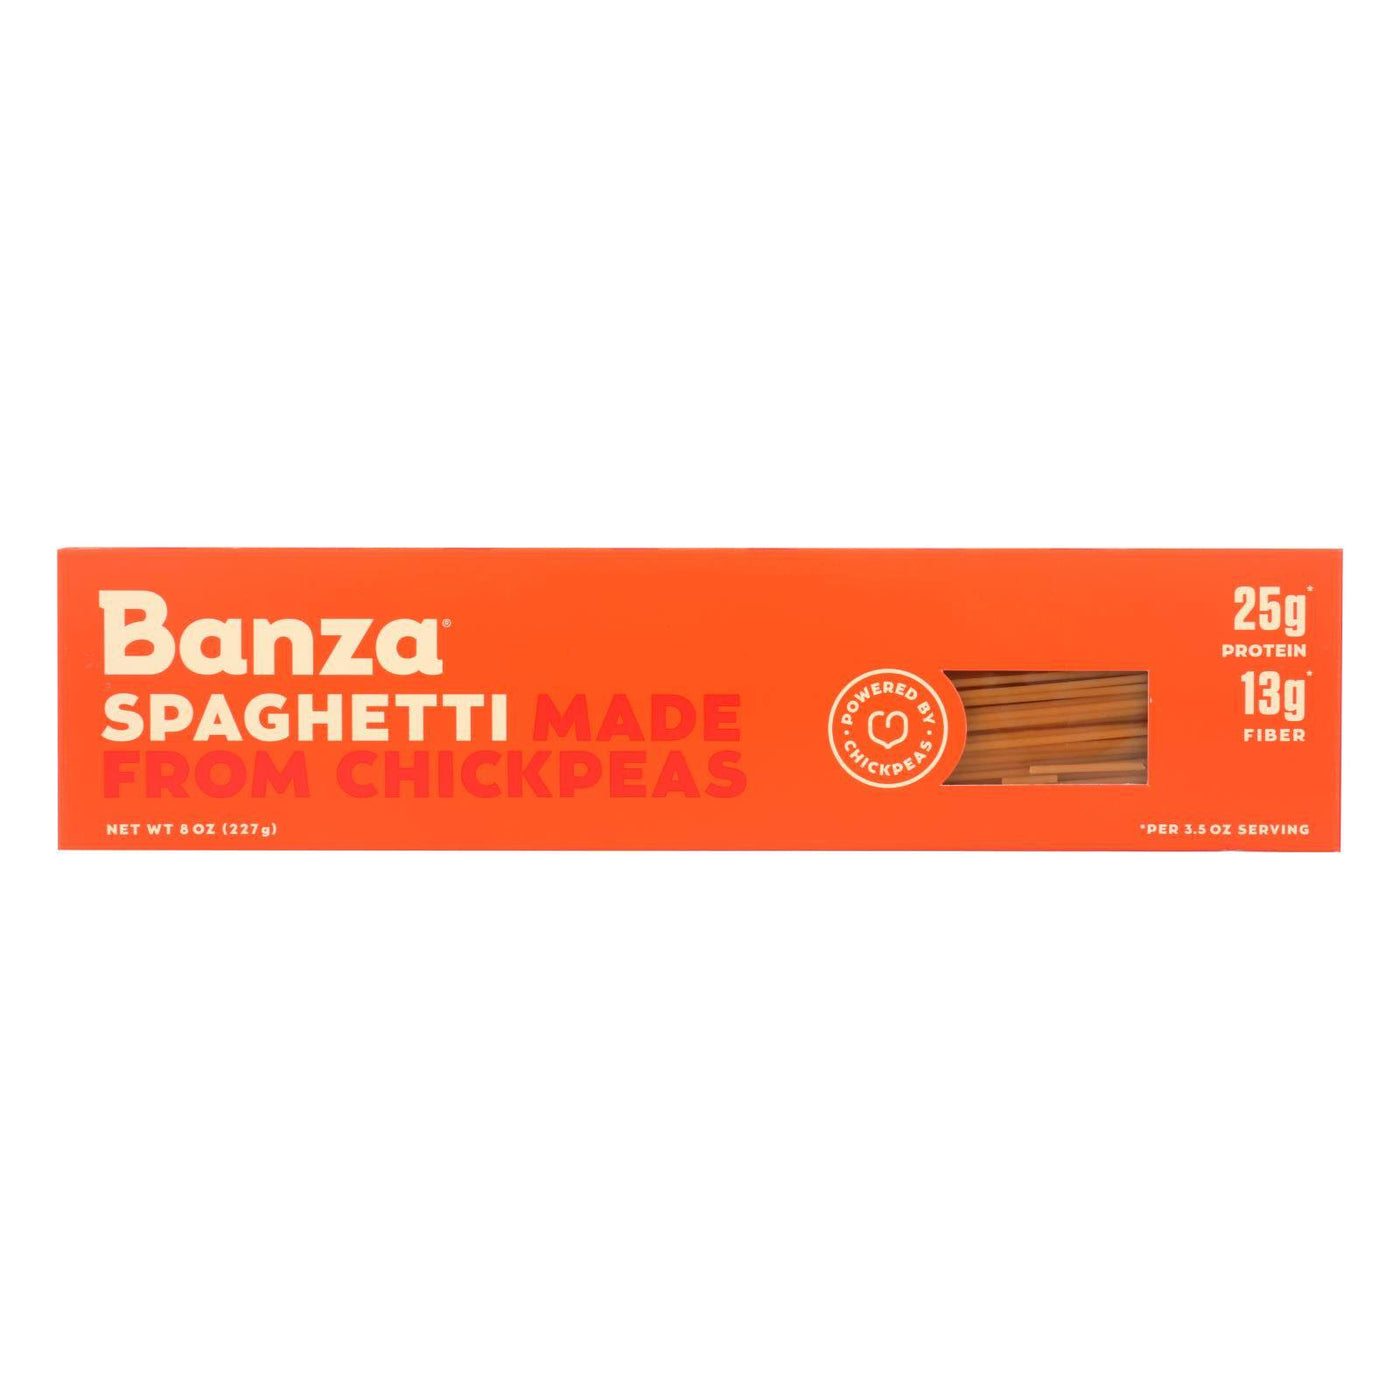 Banza - Chickpea Pasta - Spaghetti - Case Of 12 - 8 Oz. | OnlyNaturals.us